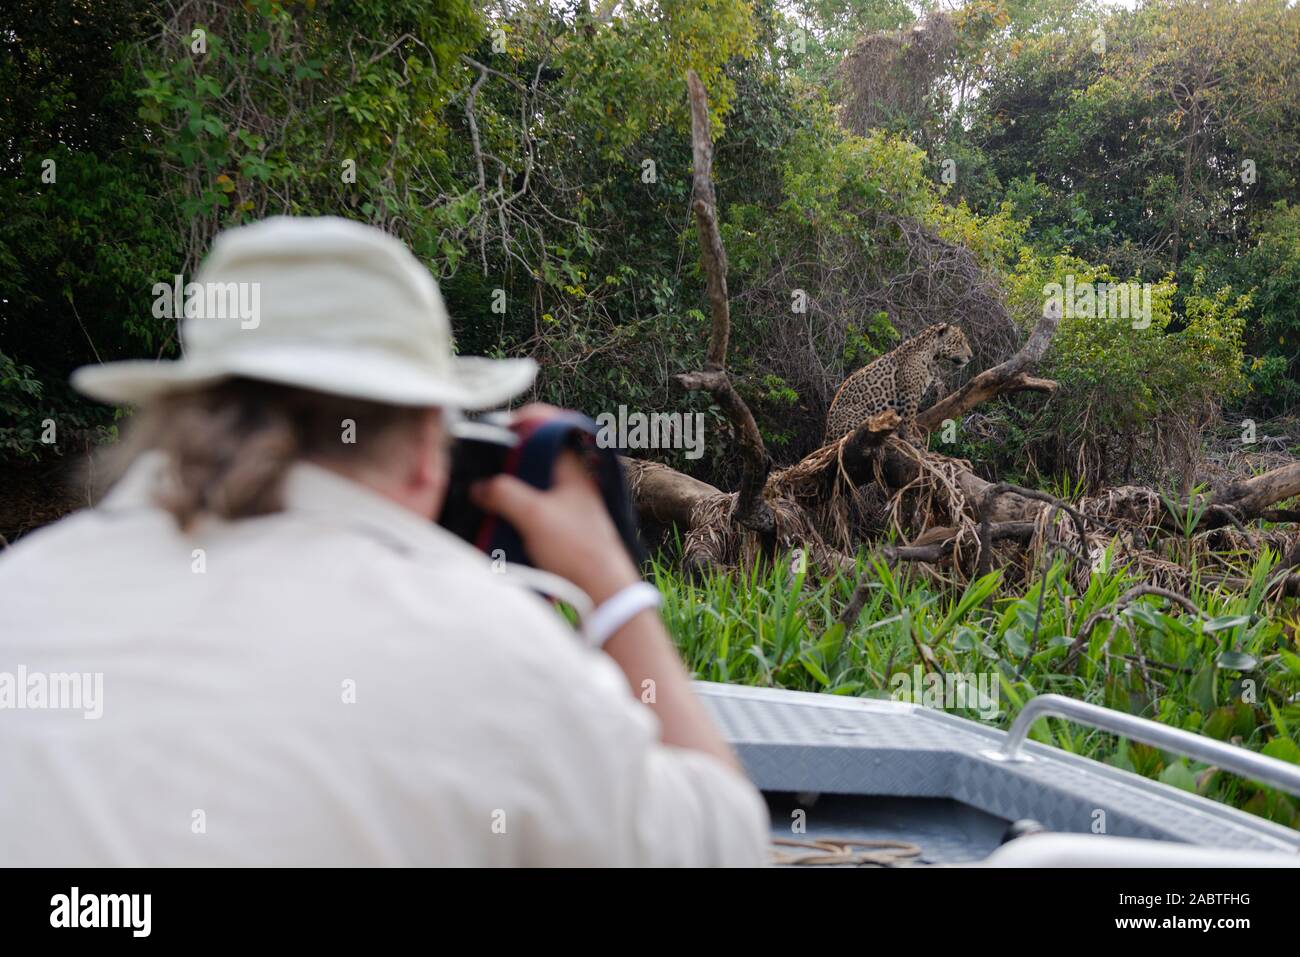 Un touriste photographie un Jaguar sauvage à Porto Jofre, Pantanal. Banque D'Images